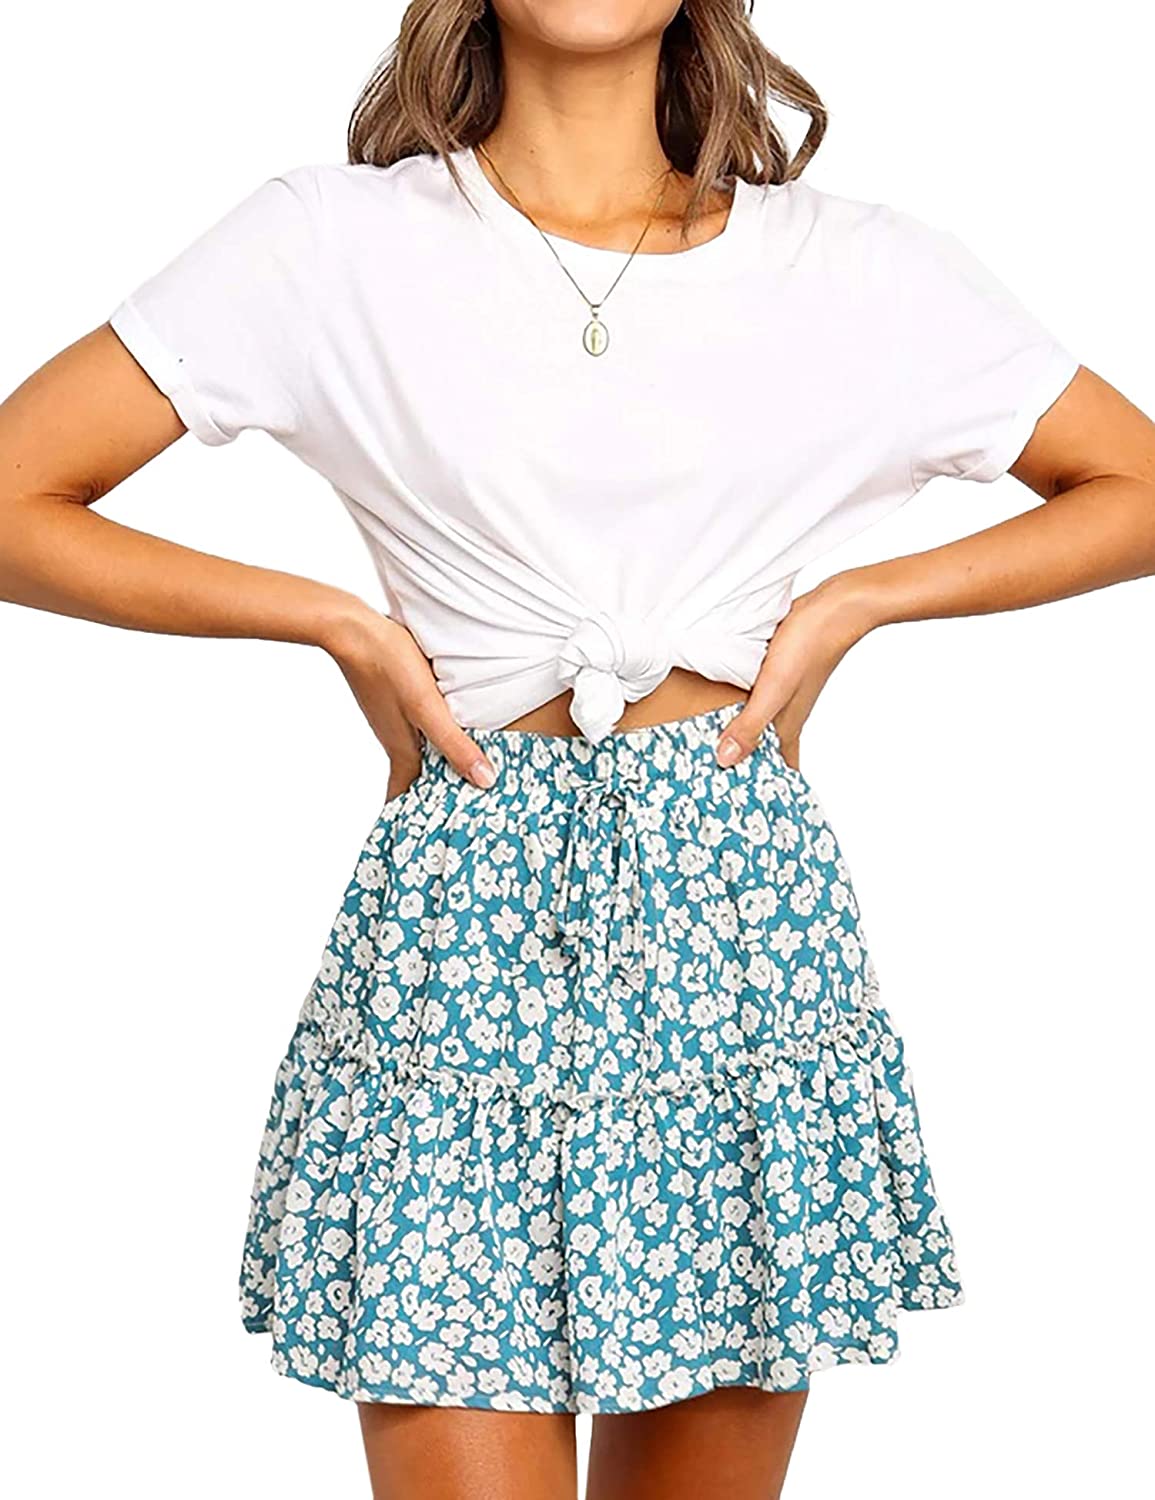 Relipop Women S Flared Short Skirt Polka Dot Pleated Mini Skater Skirt With Draw Ebay